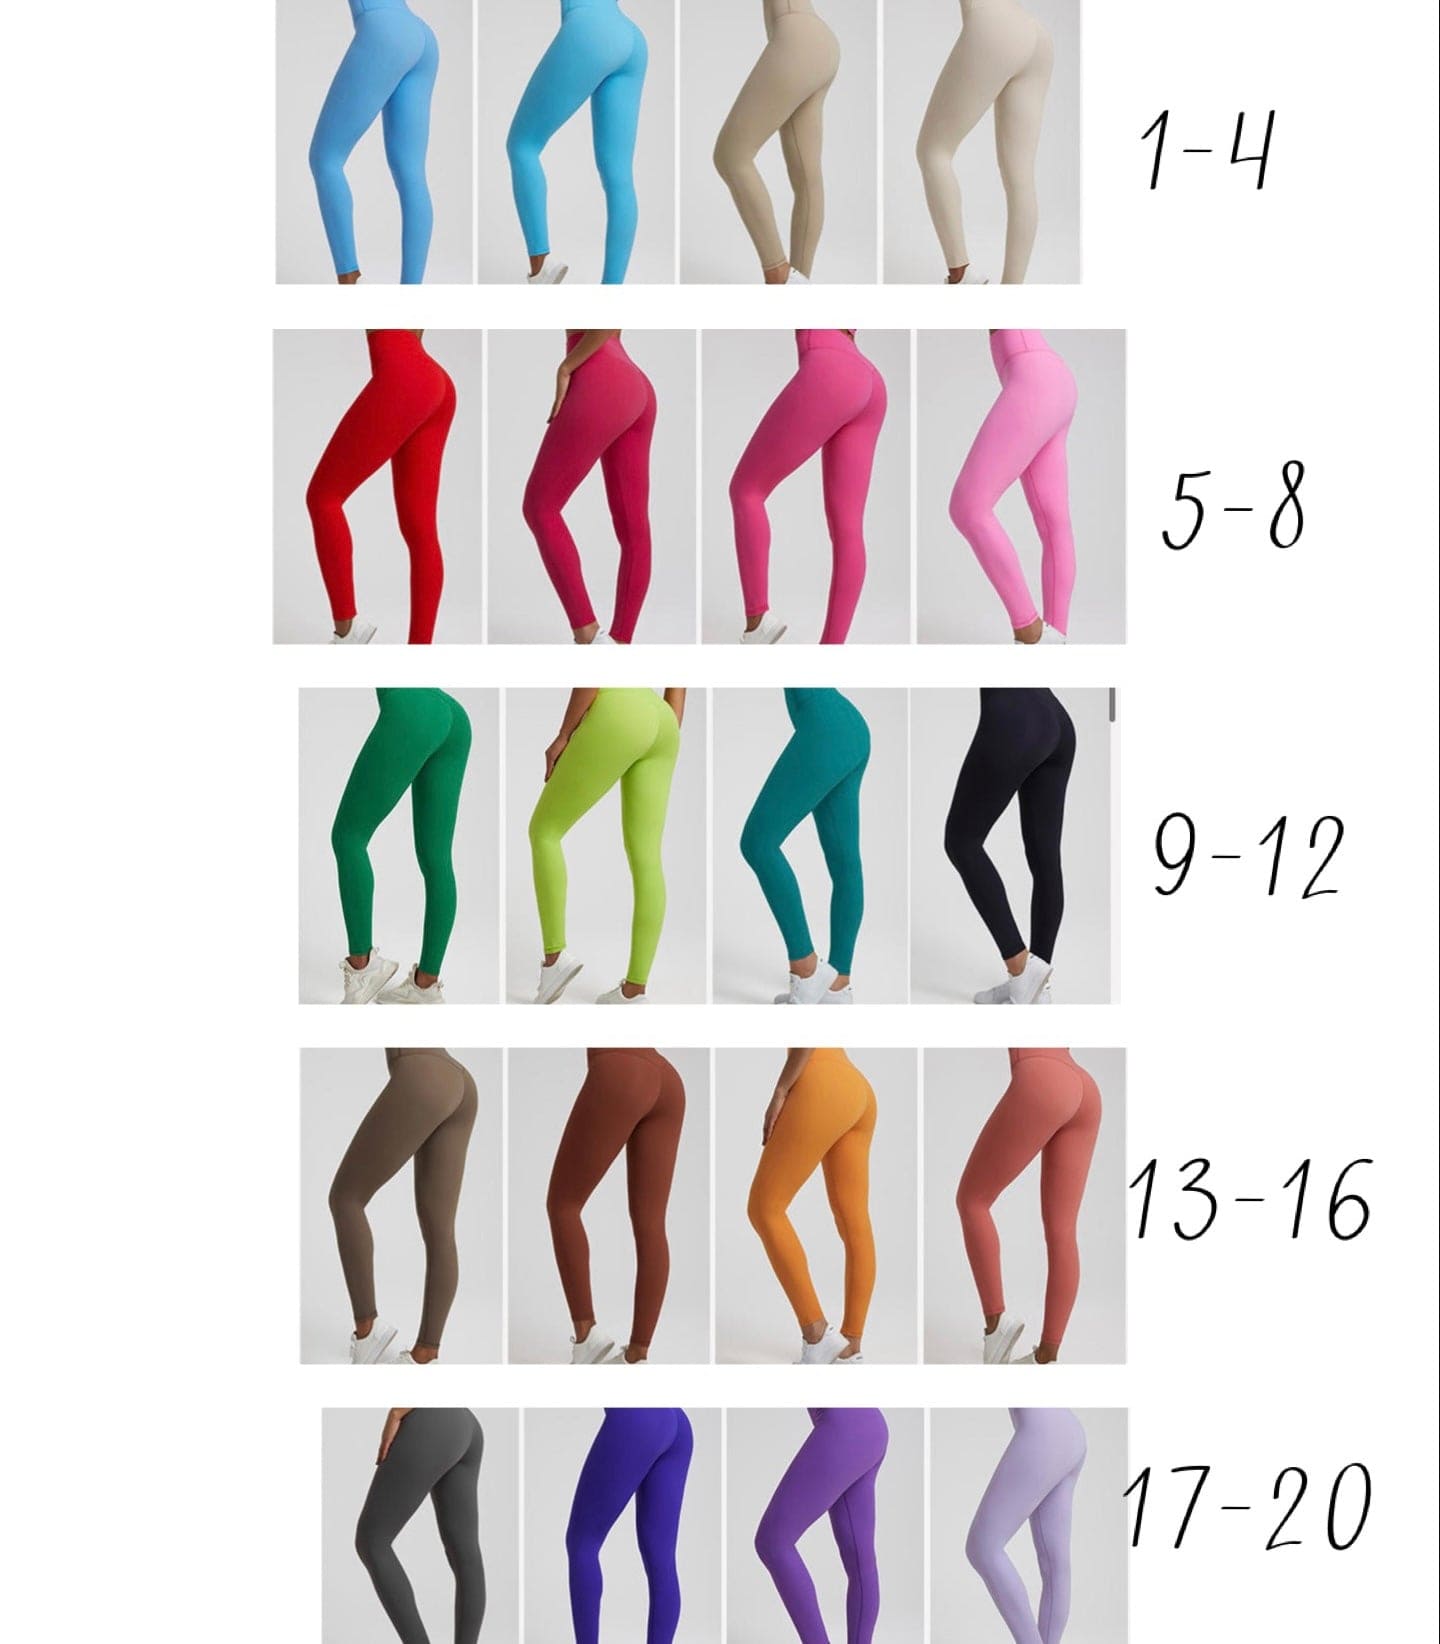 Elite seamless leggings (colour 1-10) 24.5 inch inseam